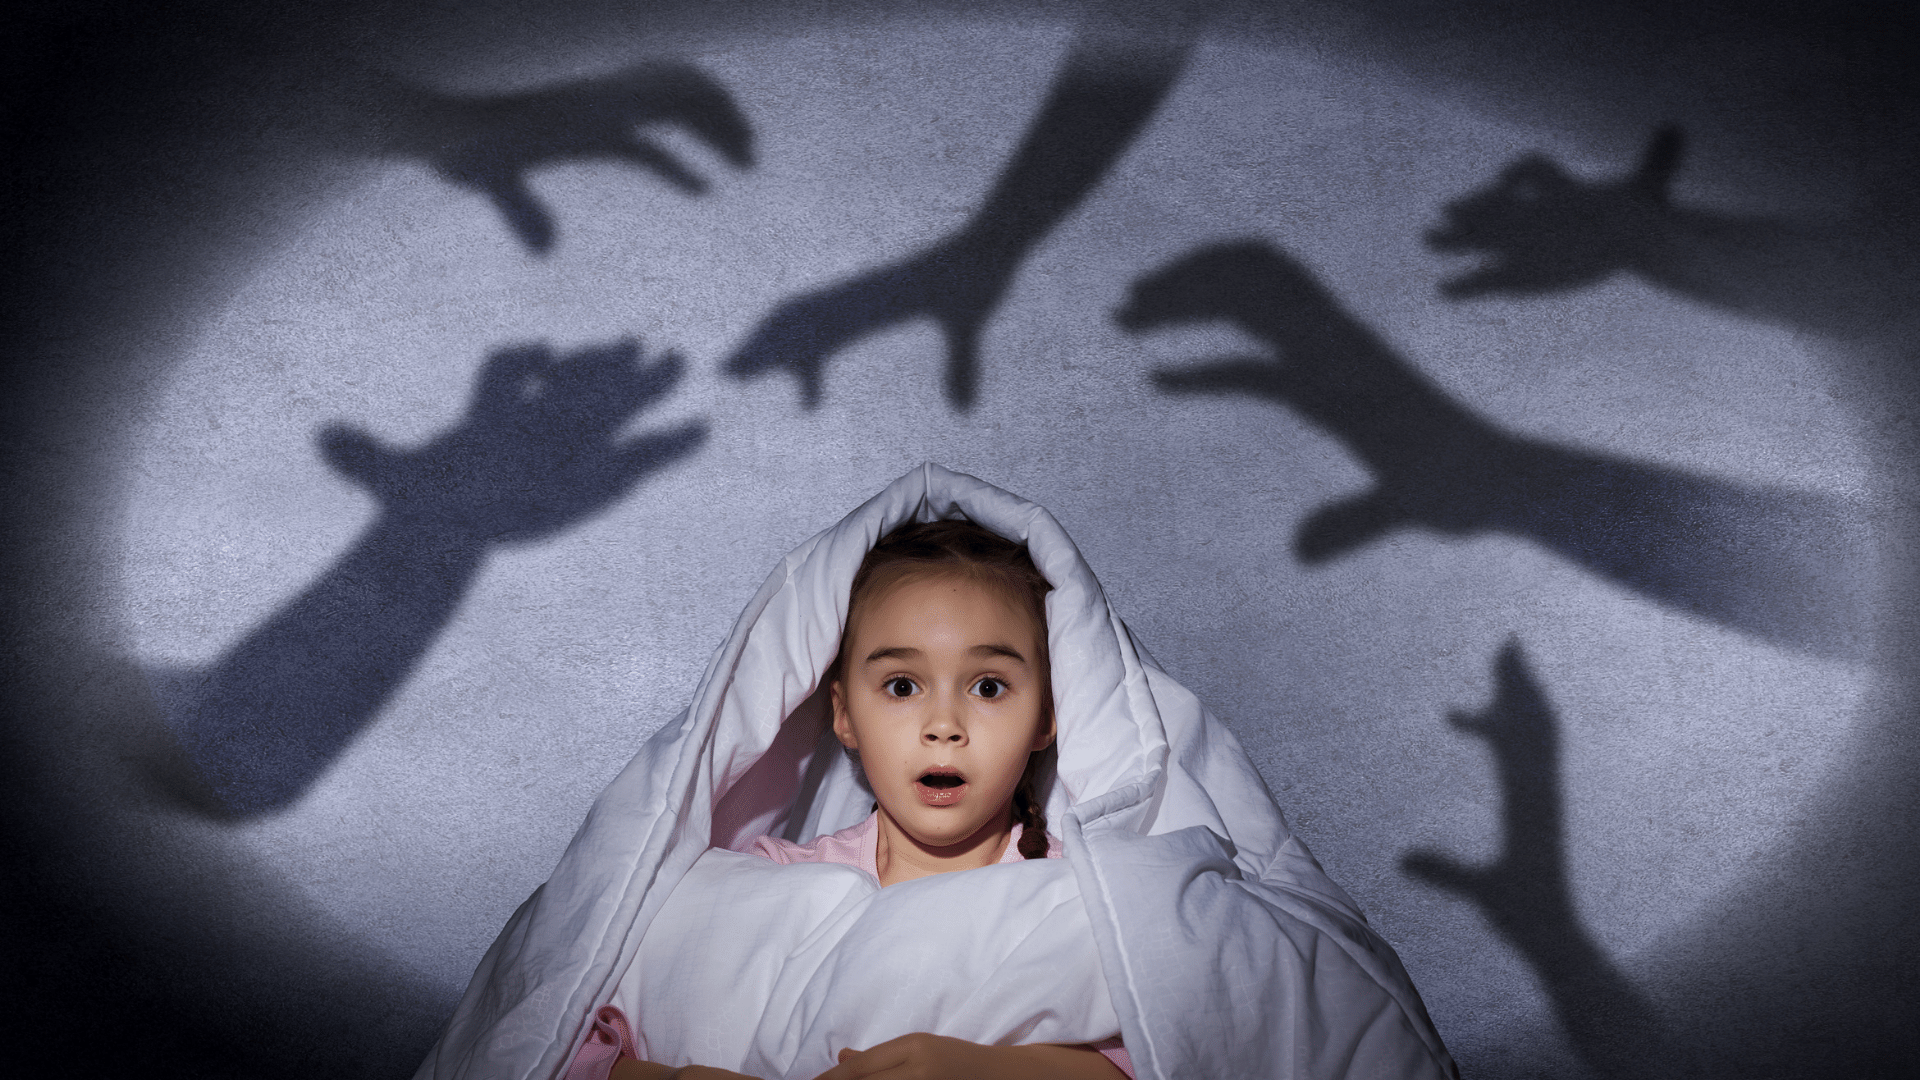 pavor nocturnus bambini incubo terrore notturno urla consulente del sonno 